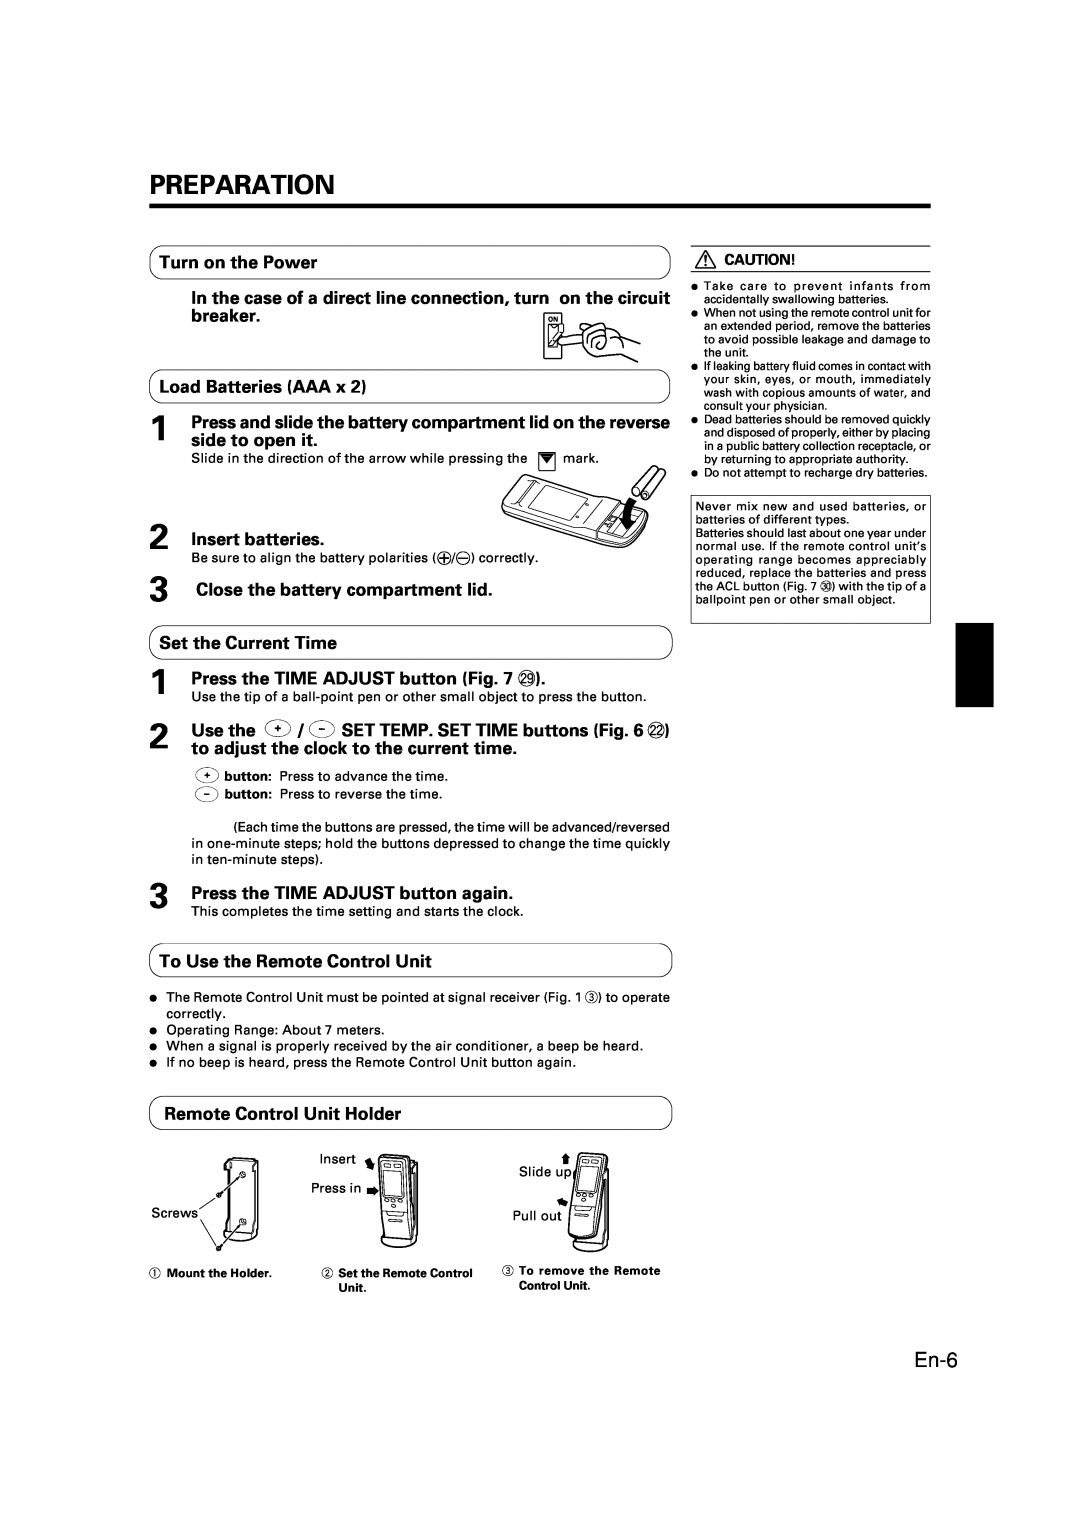 Fujitsu AOU12C1 manual Preparation, En-6, Turn on the Power, breaker, Load Batteries AAA, side to open it, Insert batteries 